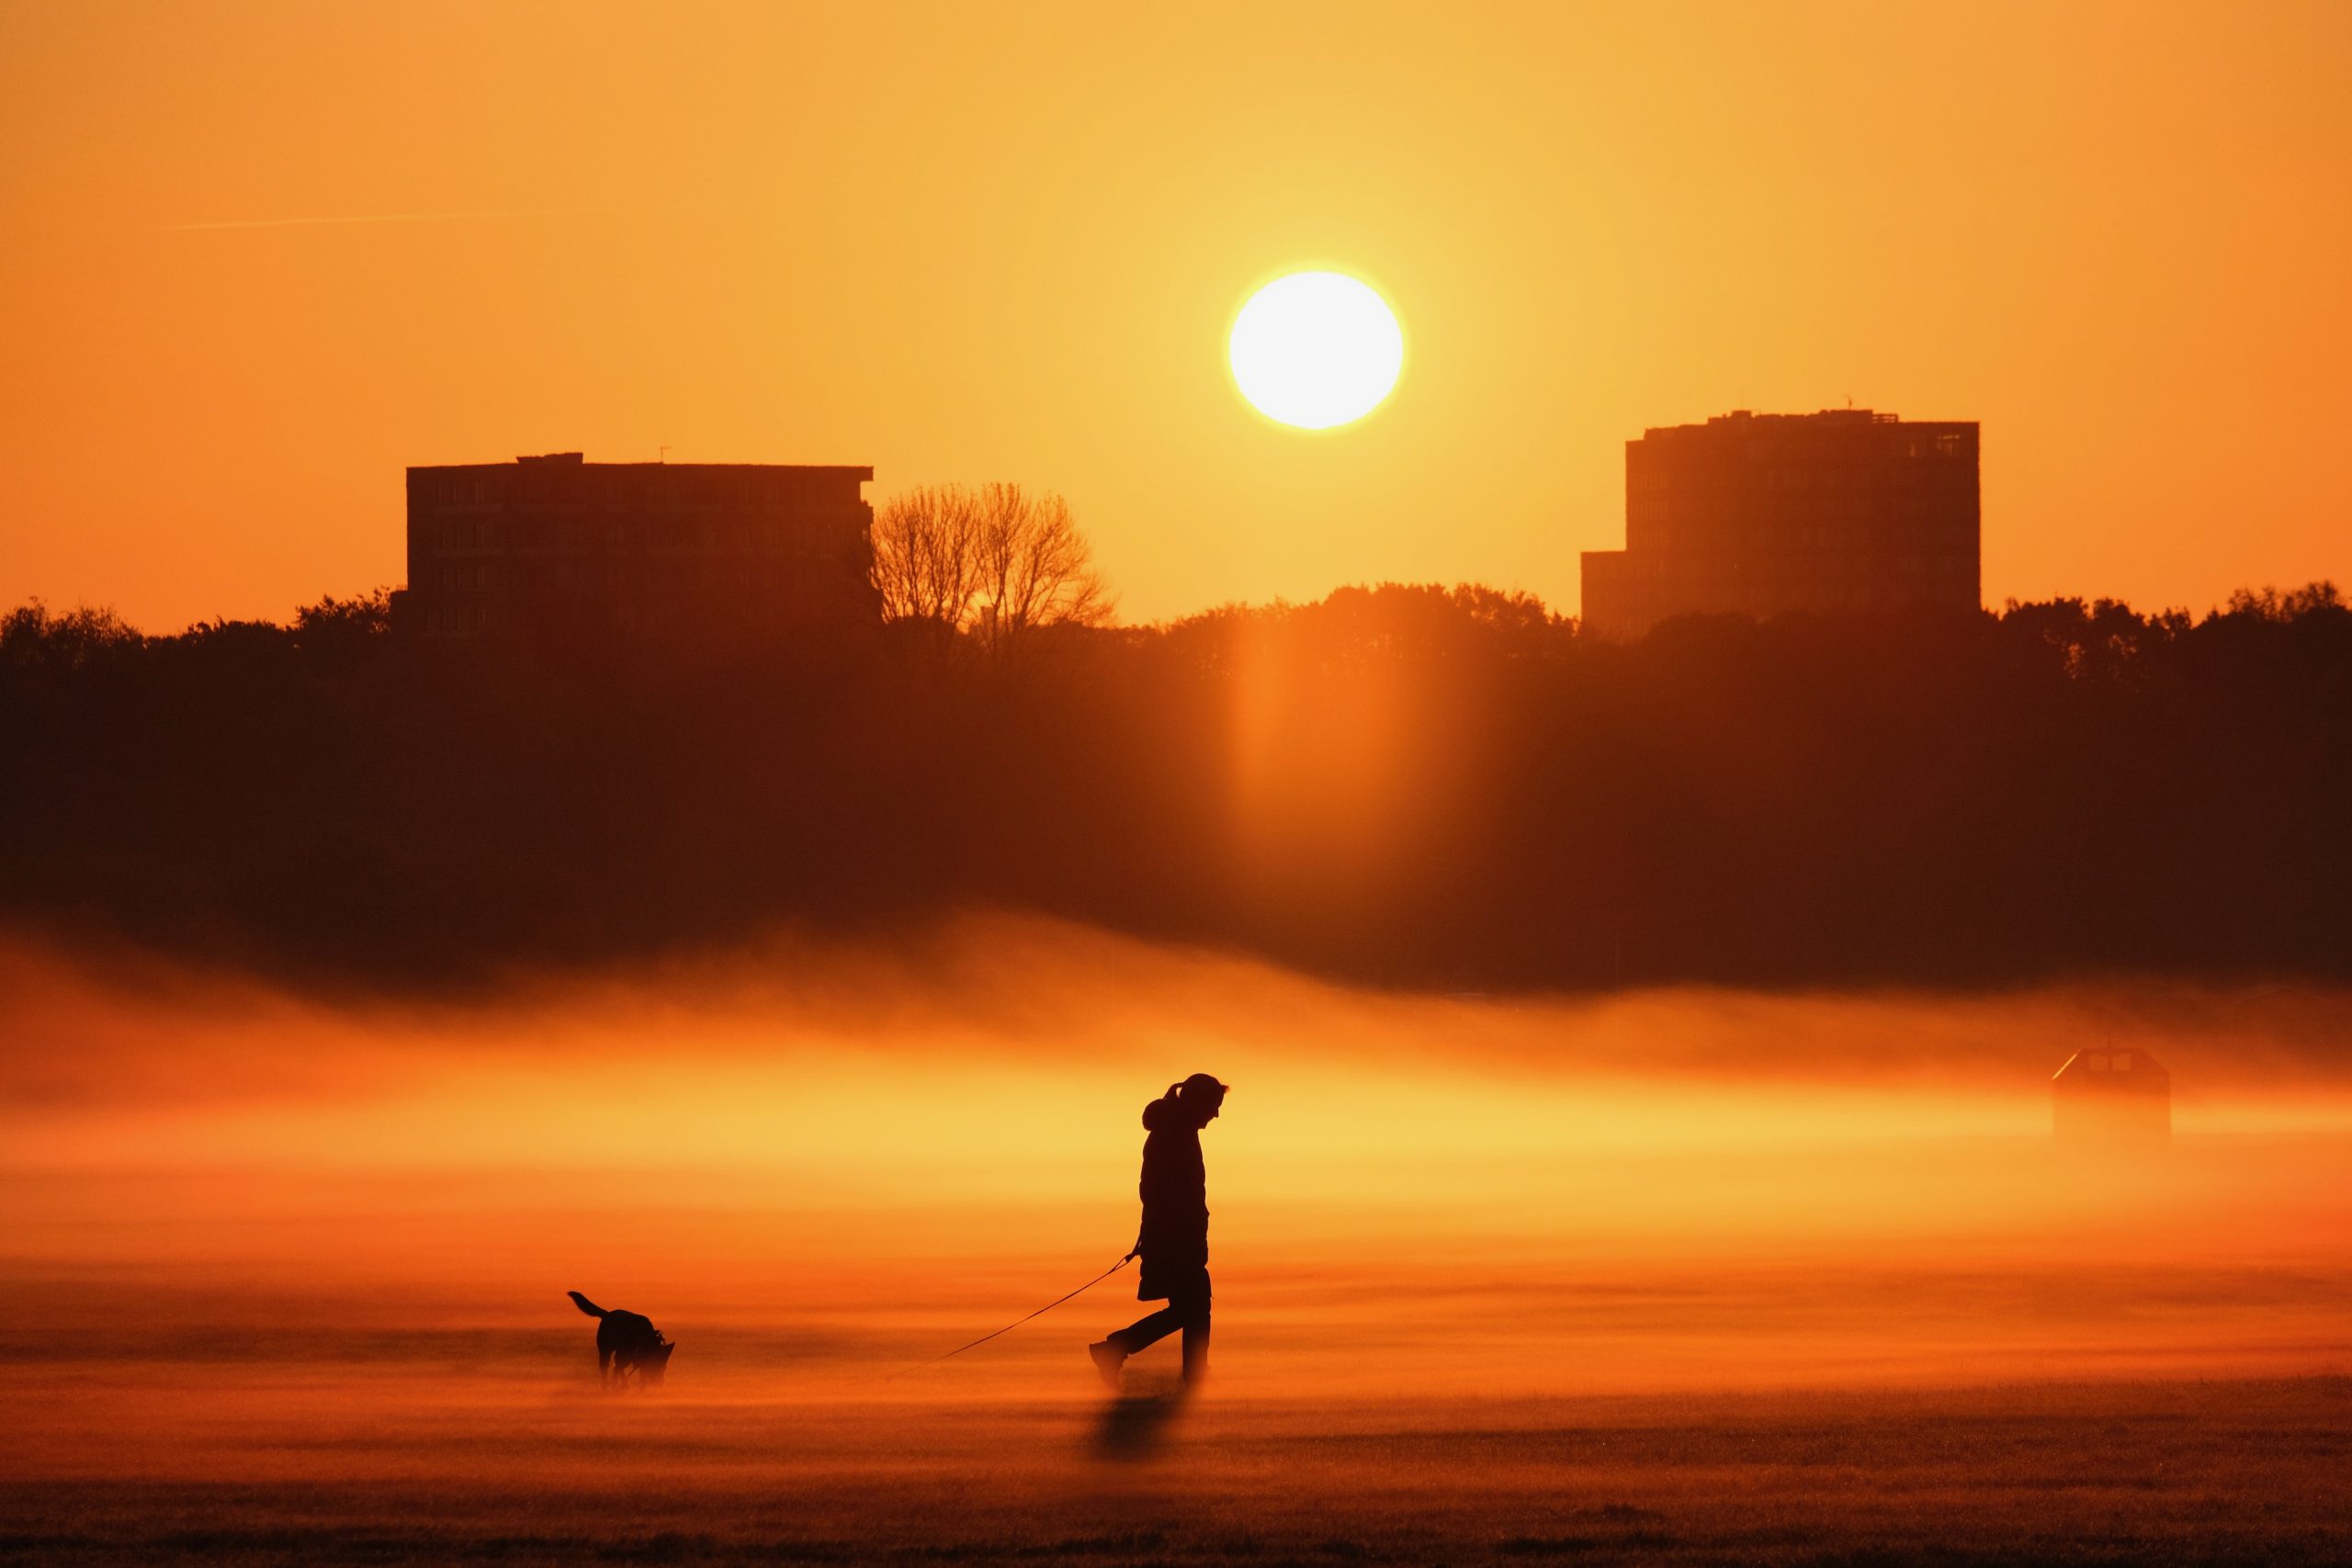 Glückwunsch zu Platz 1: Claudio Isecke hat dieses Foto geschossen. Hundebesitzer drehen auf den Stadtparkwiesen ihre frühmorgendliche Gassirunde. Die gerade aufgegangene Sonne taucht den noch über der Wiese liegenden Nebel in goldenes Licht. Wunderschön!